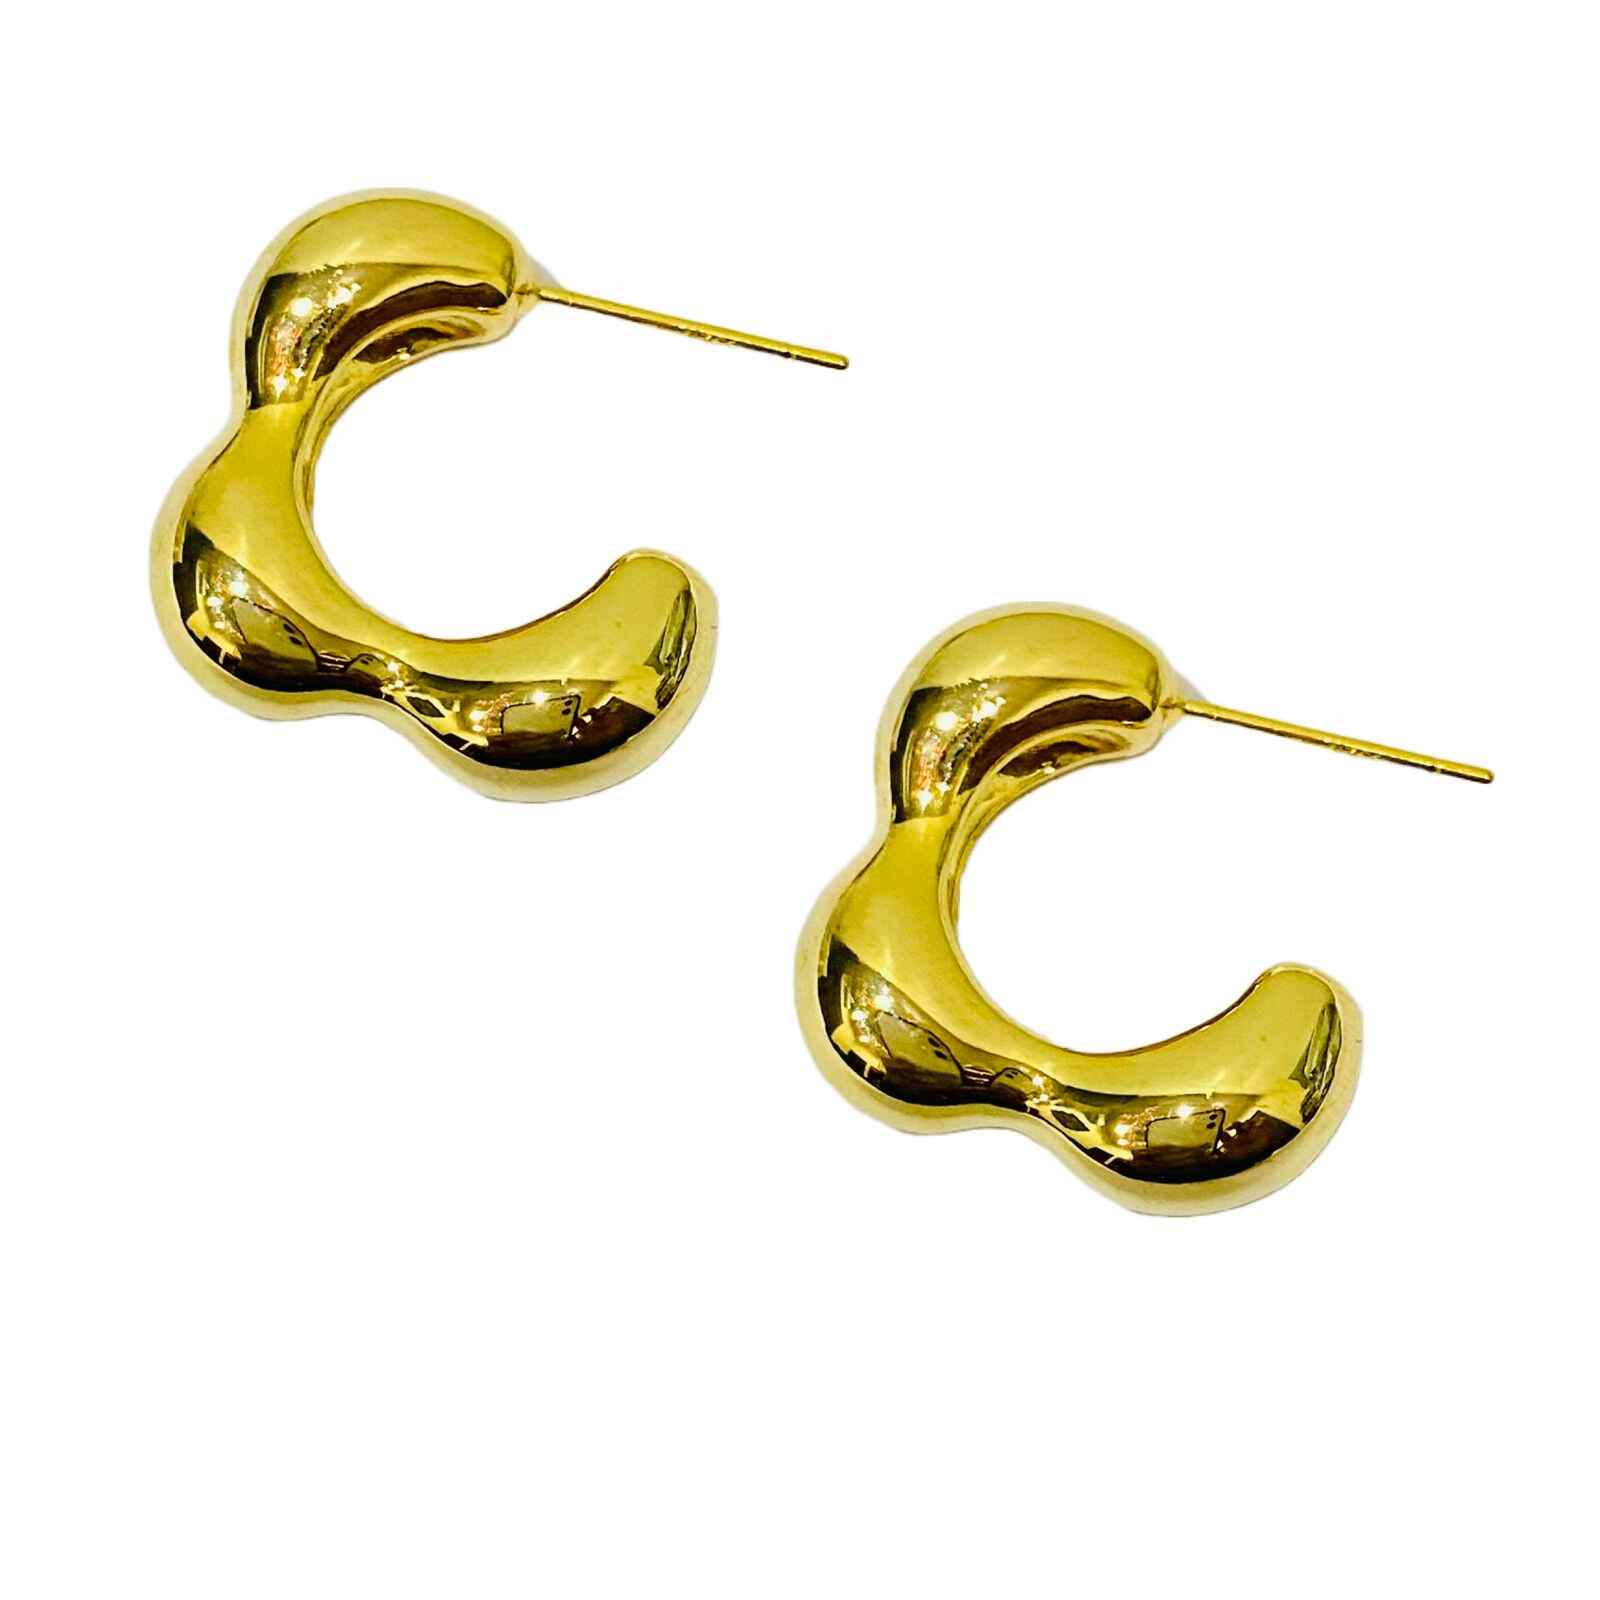 Kundan Earrings Design | आपके ट्रेडिशनल लुक को स्टाइलिश बनाएगी ये कुंदन  ईयररिंग्स डिजाइन - Uprising Bihar